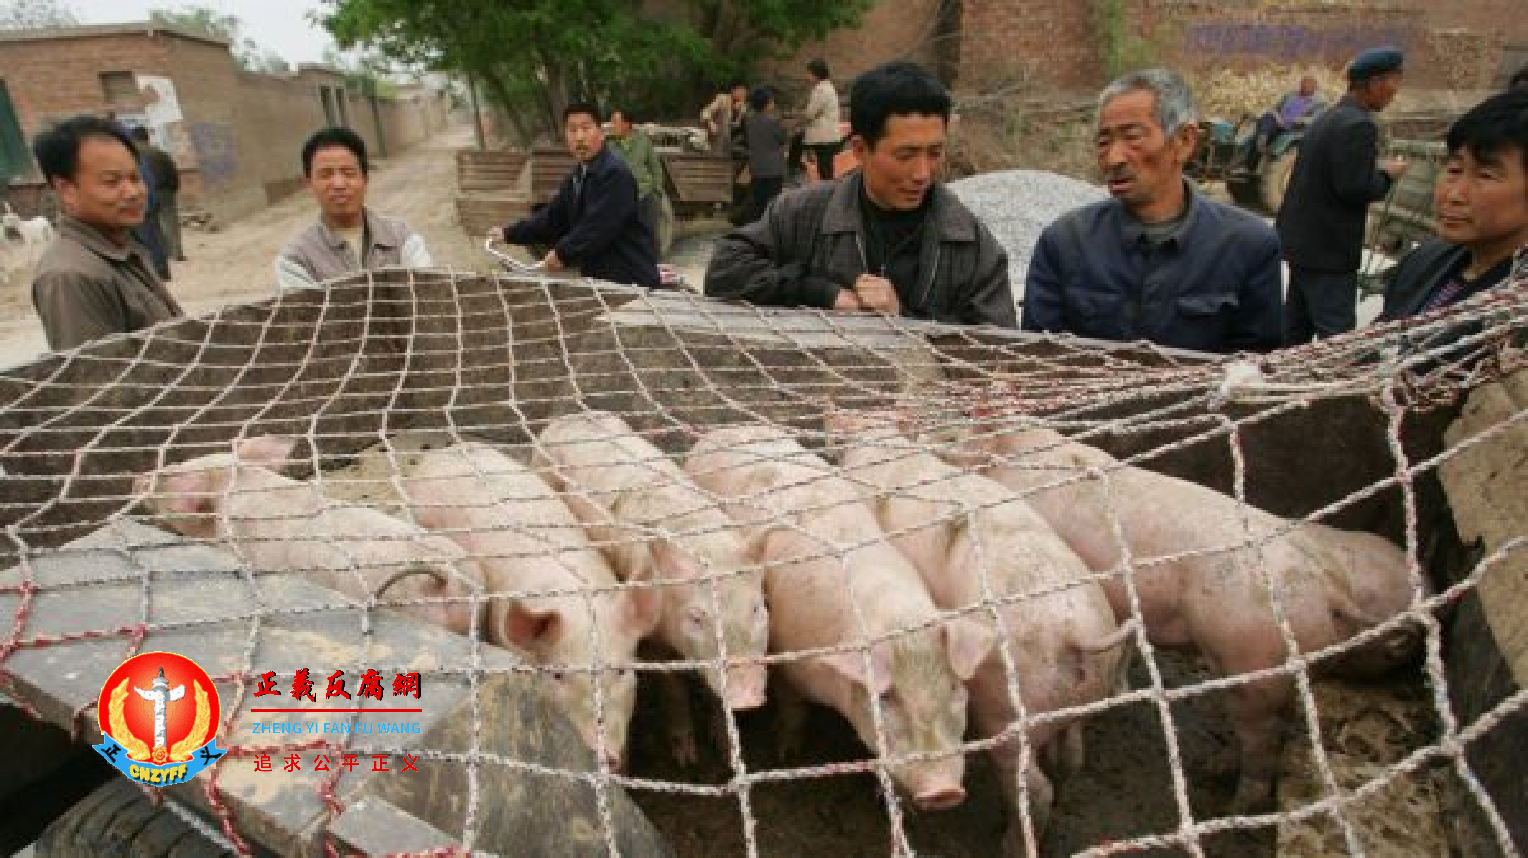 养猪企业温氏股份去年亏损133亿。.png